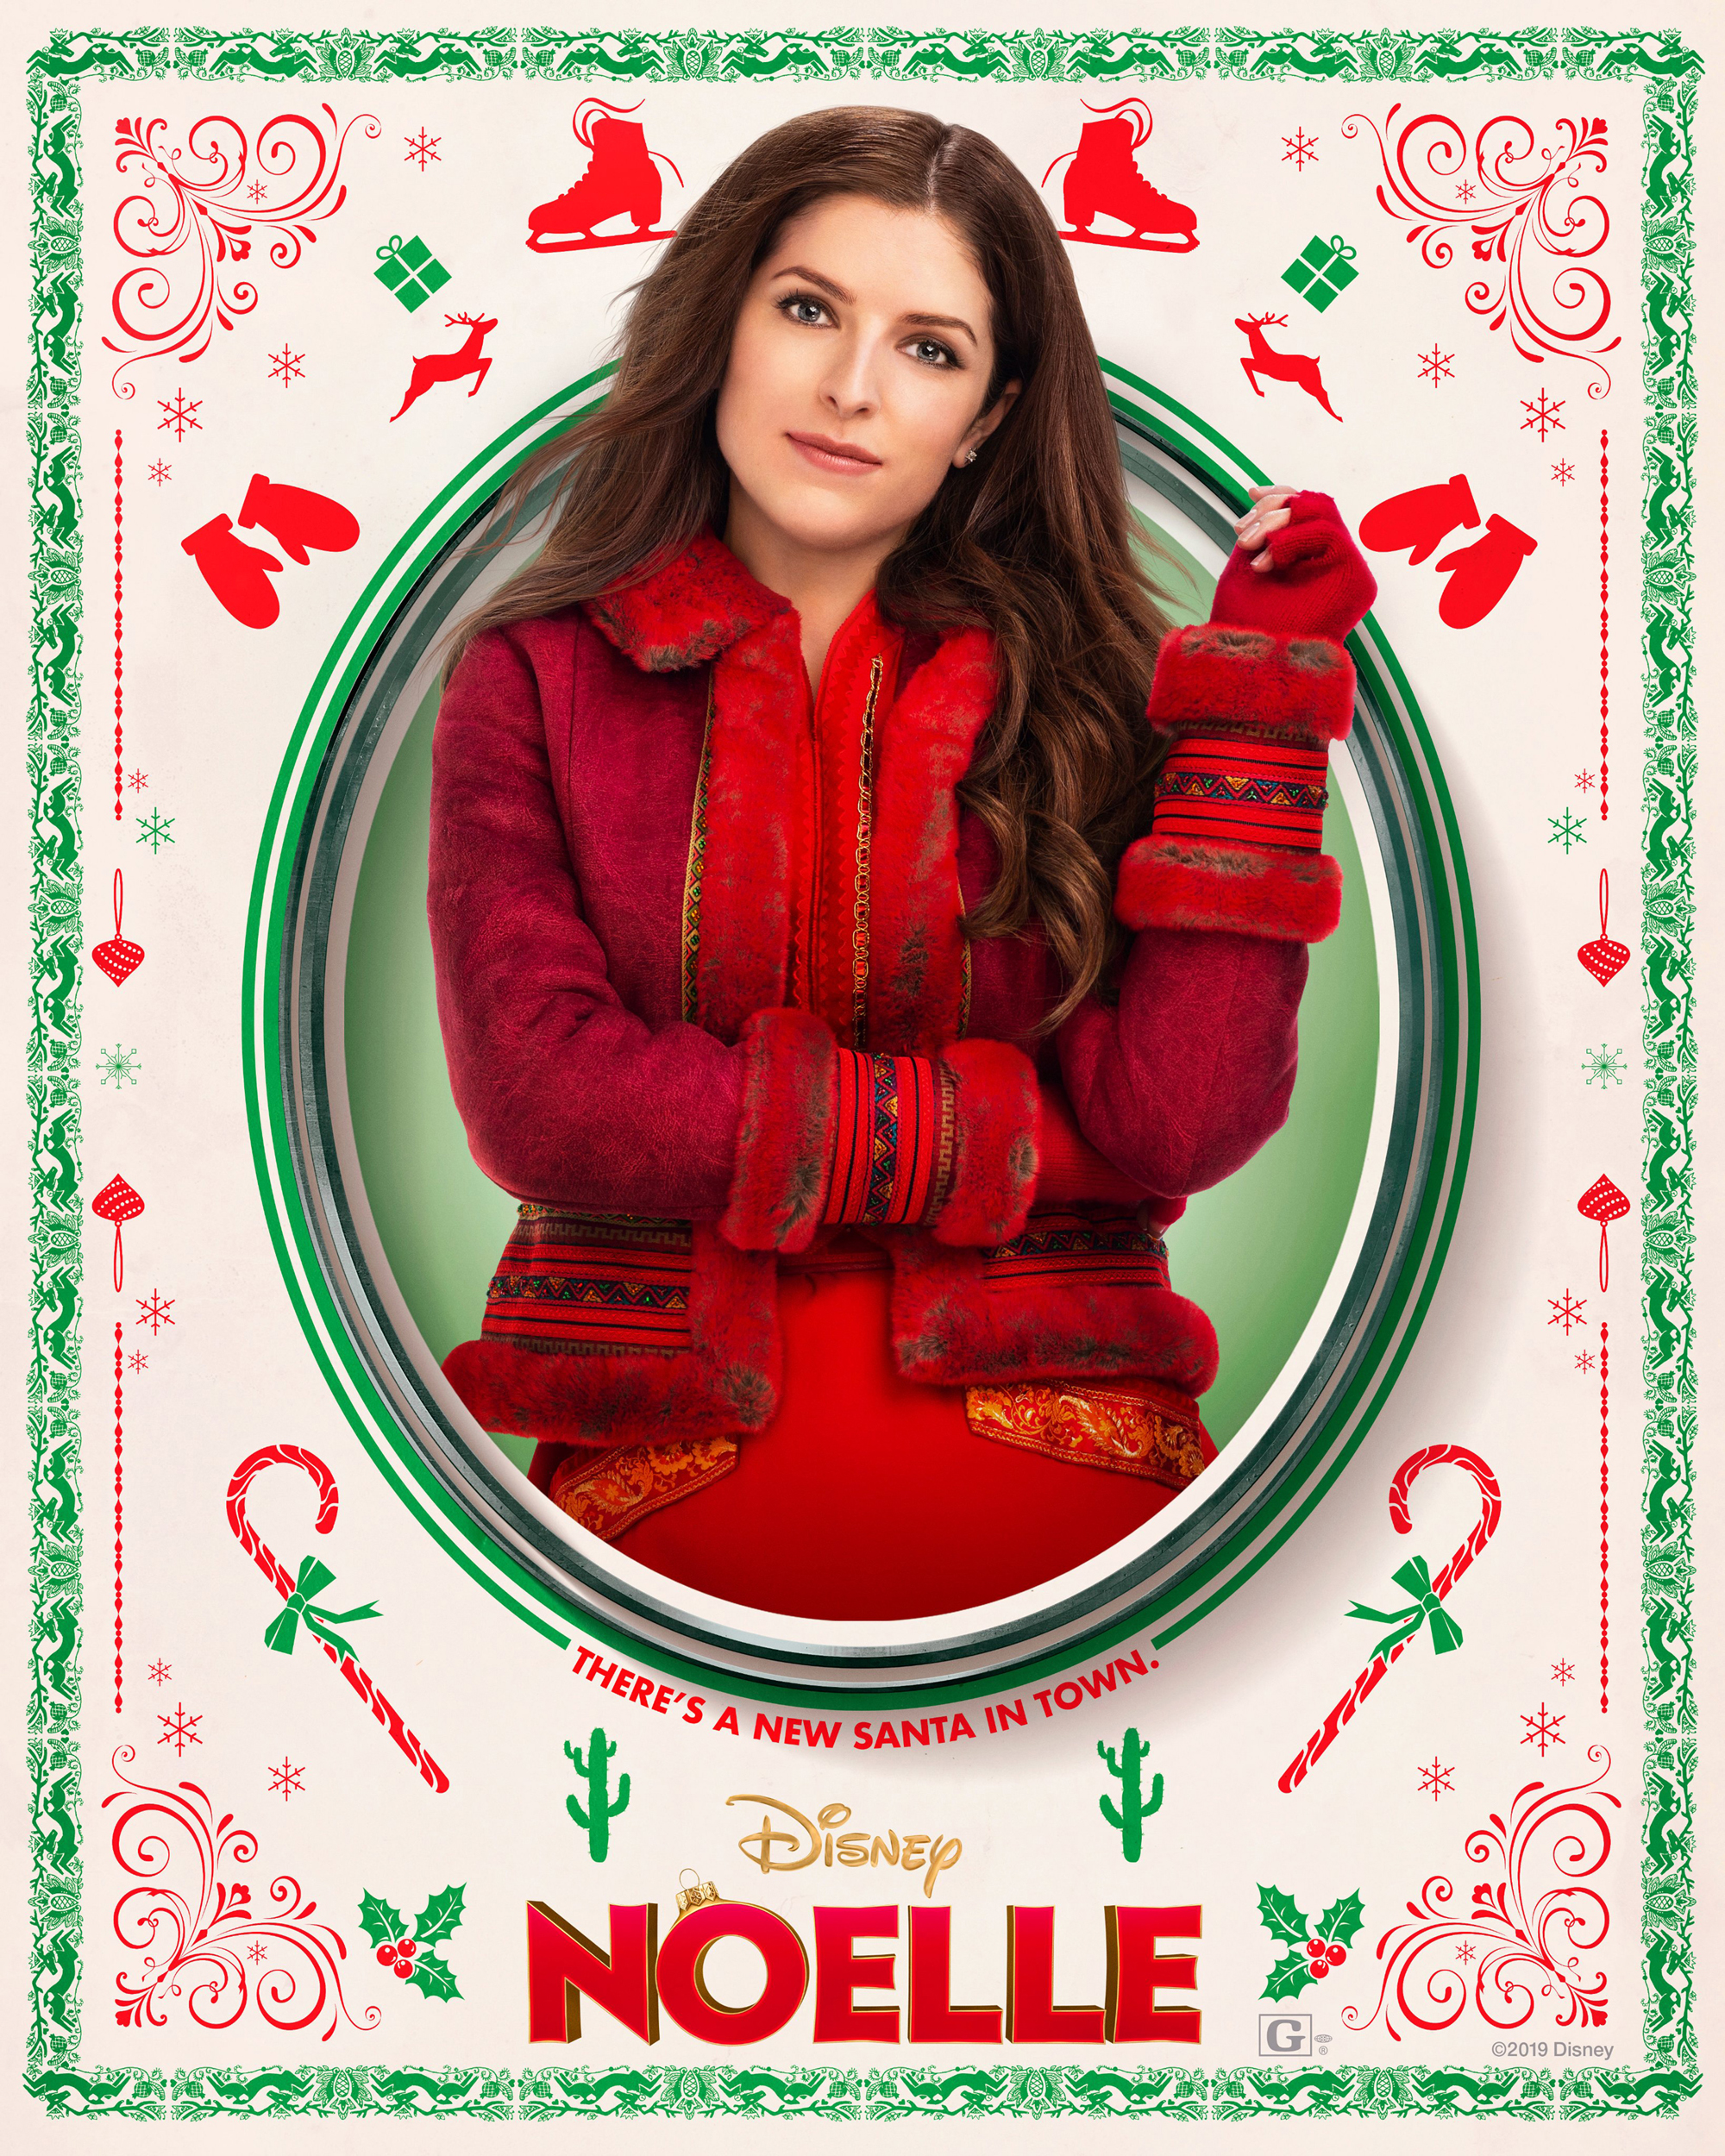 Noelle (2019) Character Poster - Anna Kendrick as Noelle Kringle